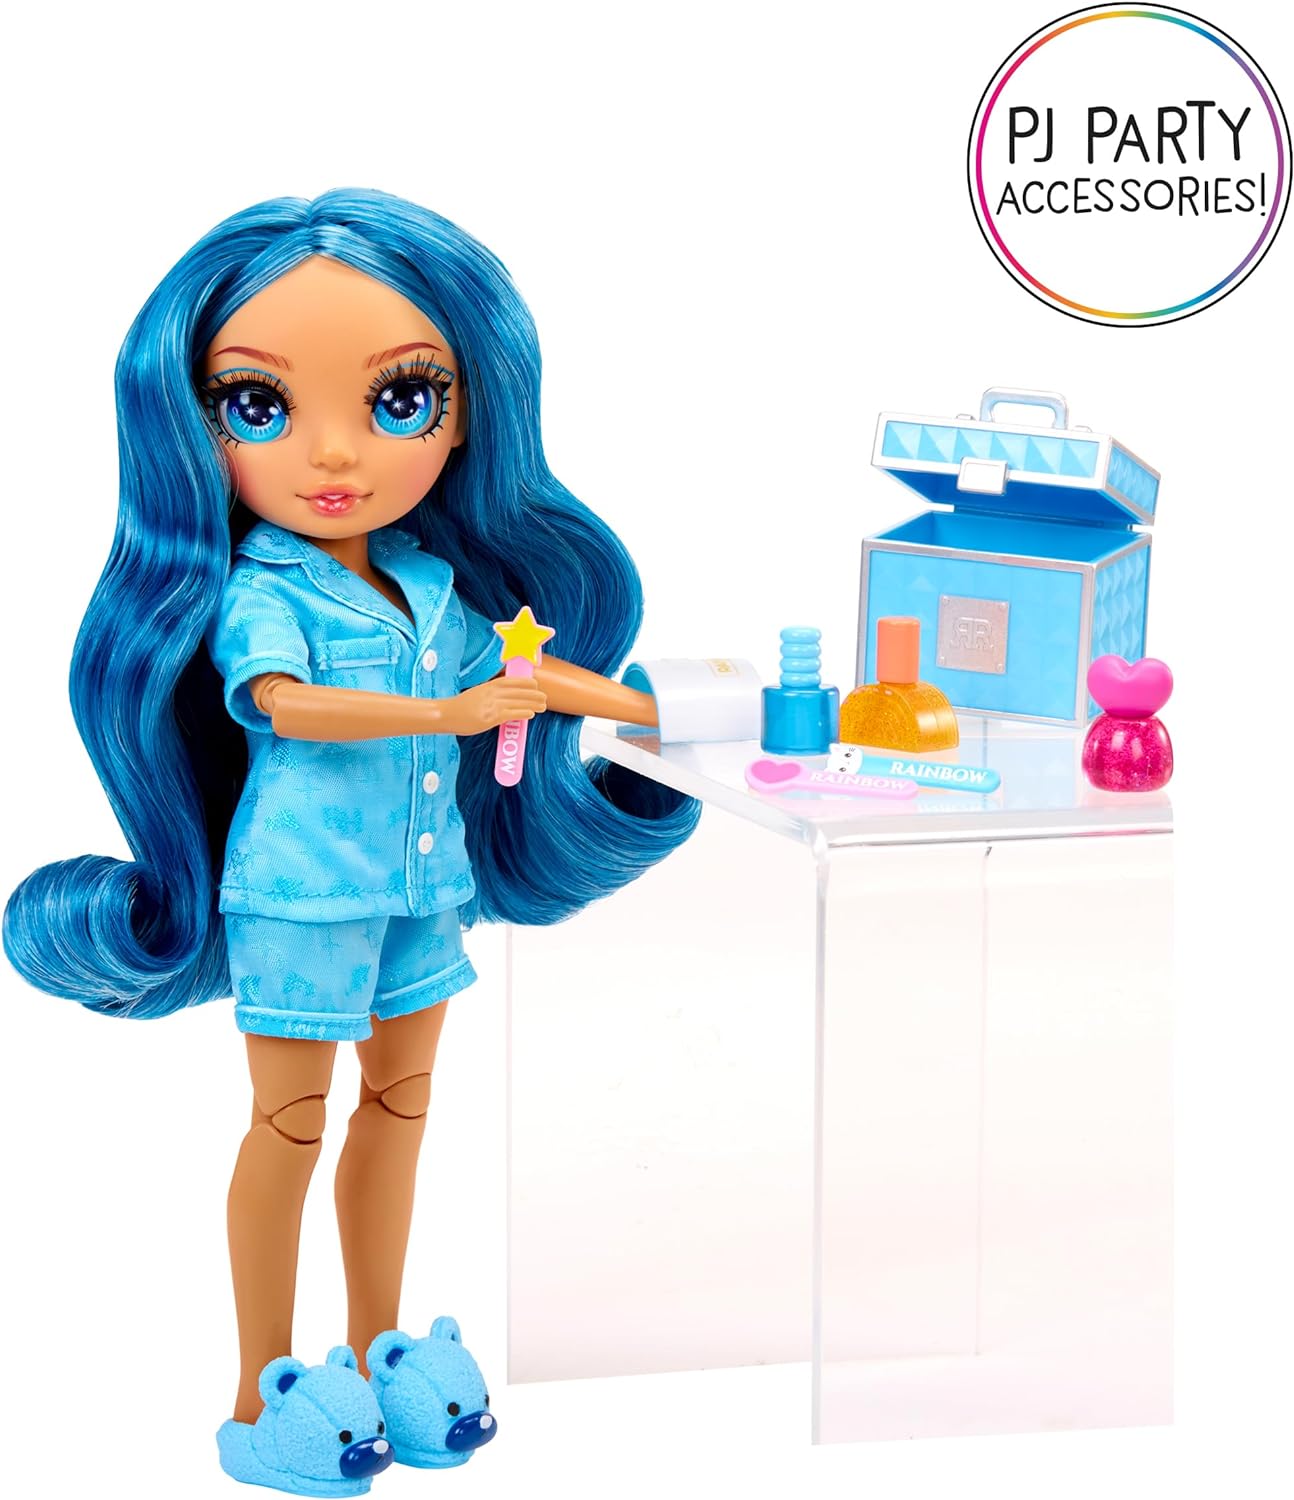 Rainbow High Junior High PJ Party - Skyler (azul) - Boneca articulada de 22 cm com macacão macio, chinelos e acessórios para brincar - Brinquedo infantil - Ótimo para idades de 4 a 12 anos